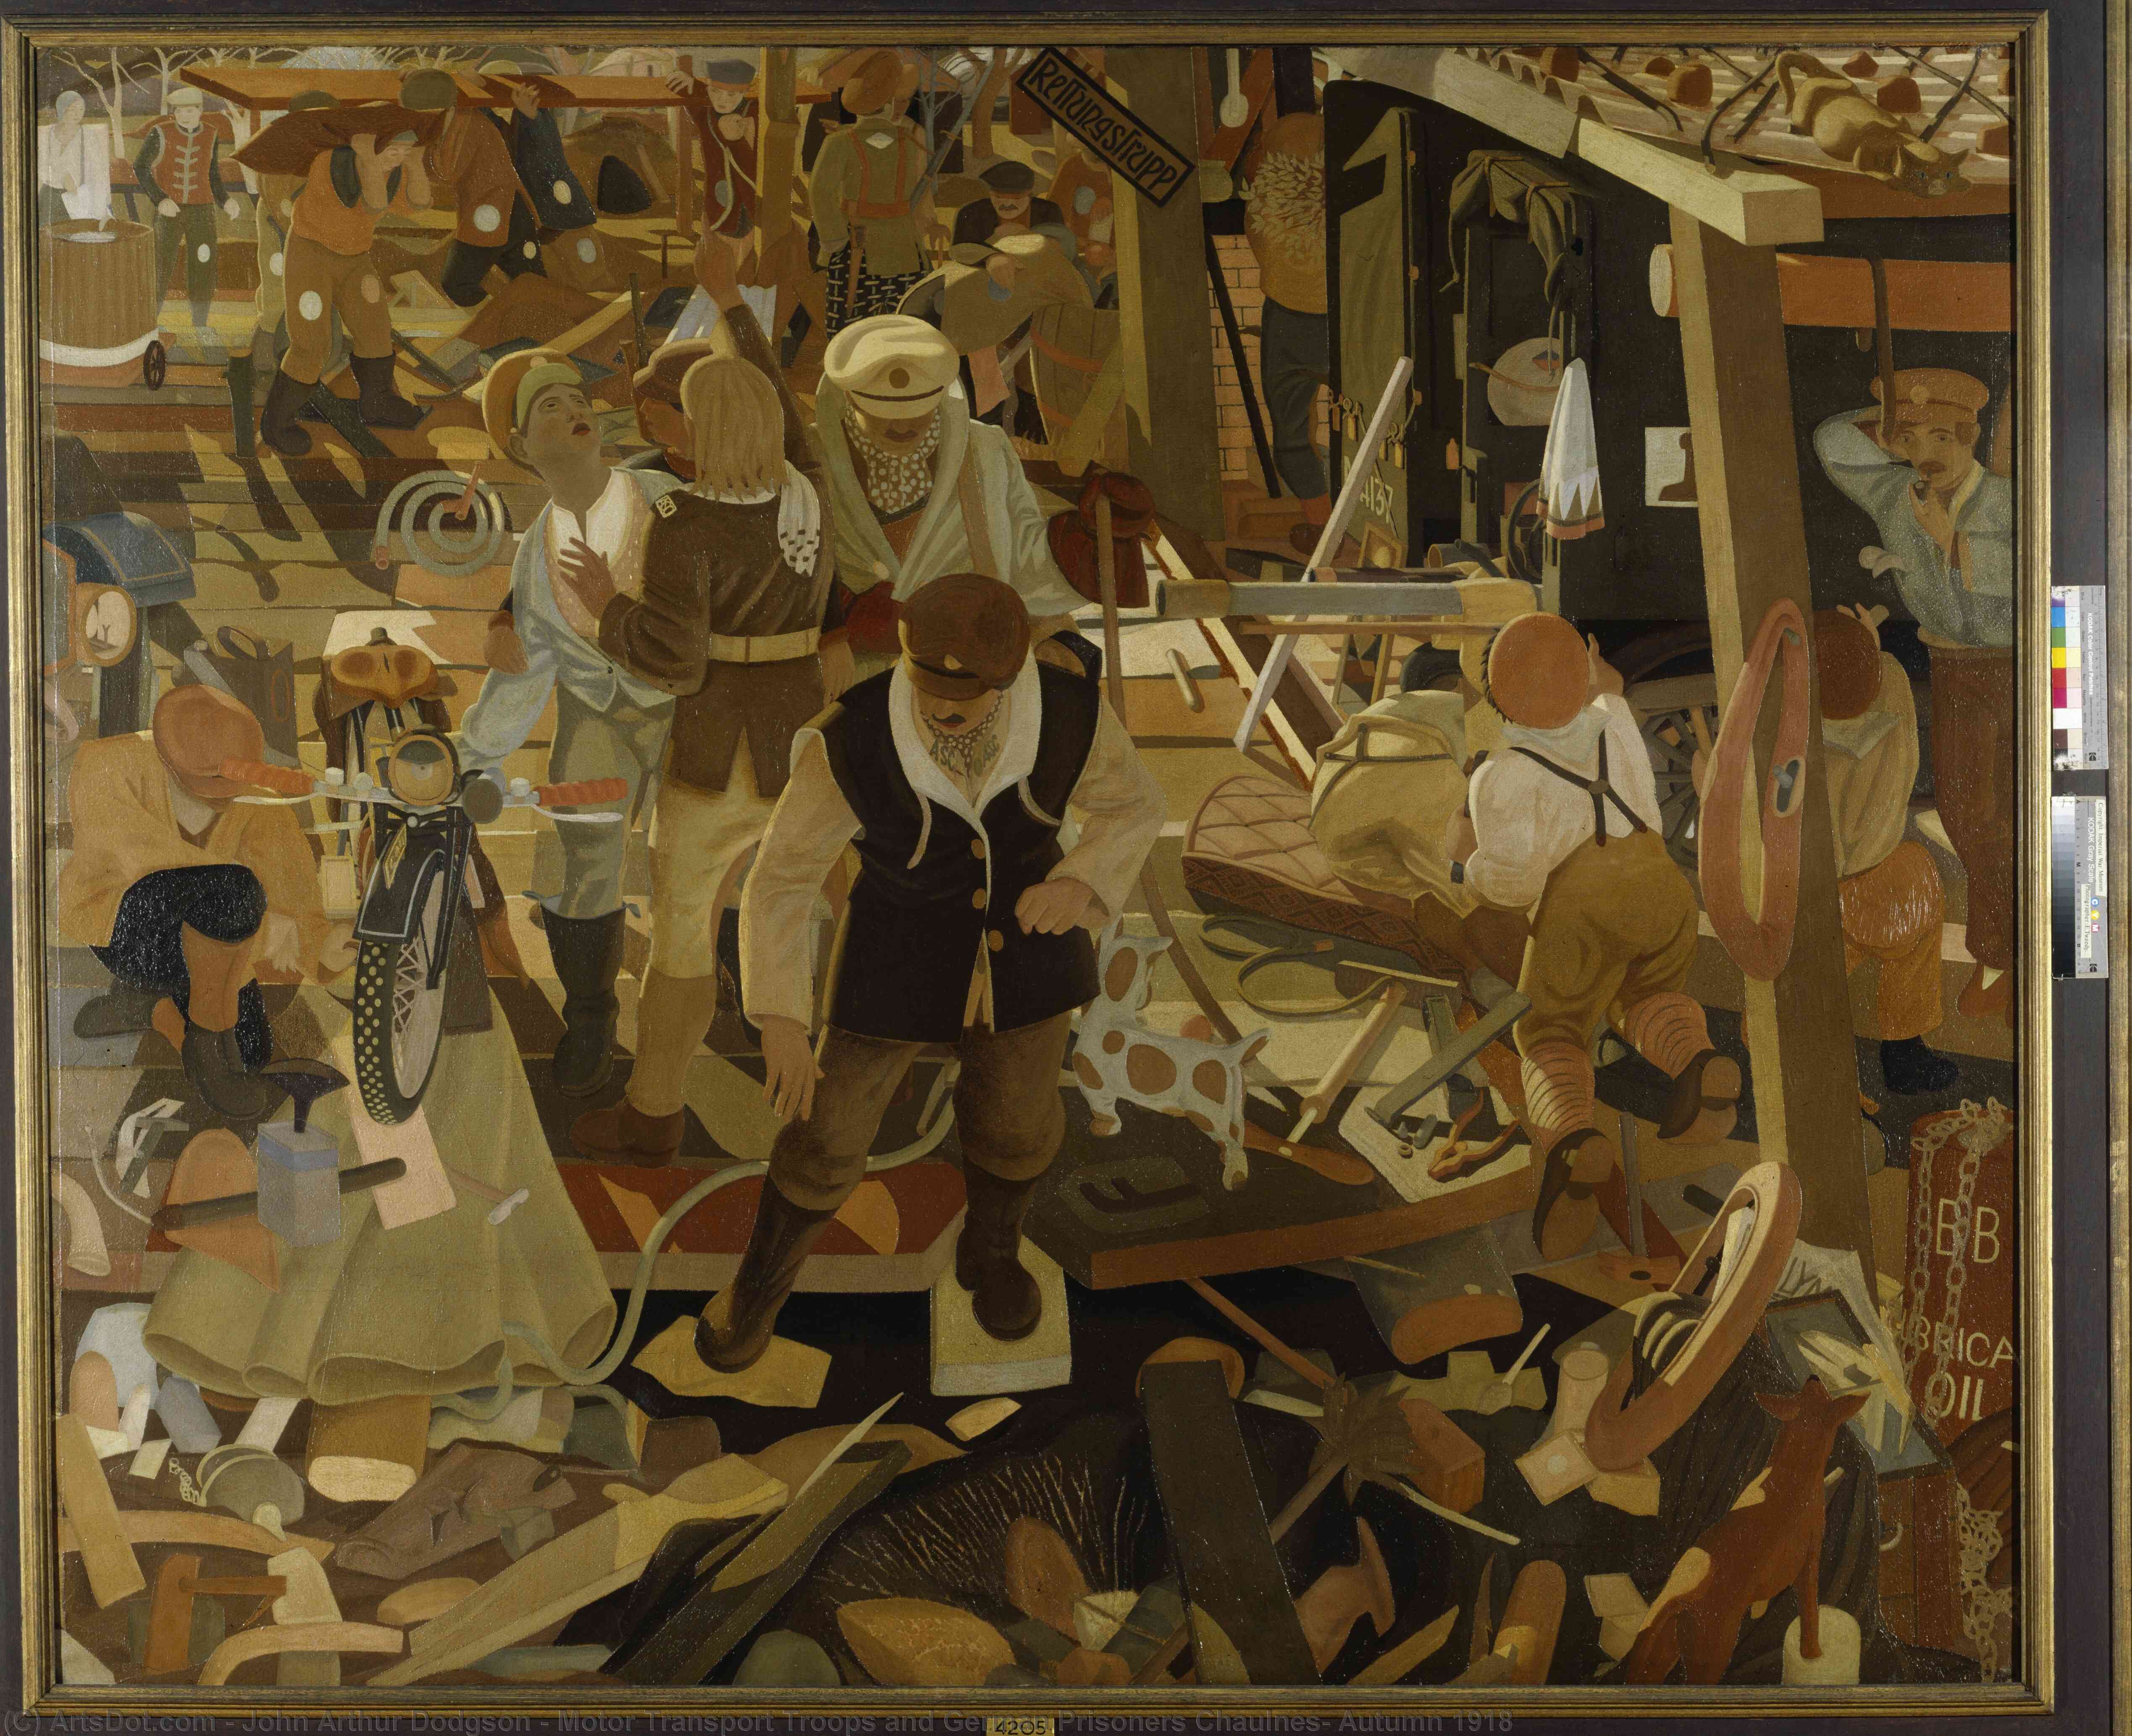 Achat Reproductions De Peintures Troops et prisonniers allemands Chaulnes, Automne 1918, 1918 de John Arthur Dodgson (Inspiré par) (1890-1969) | ArtsDot.com